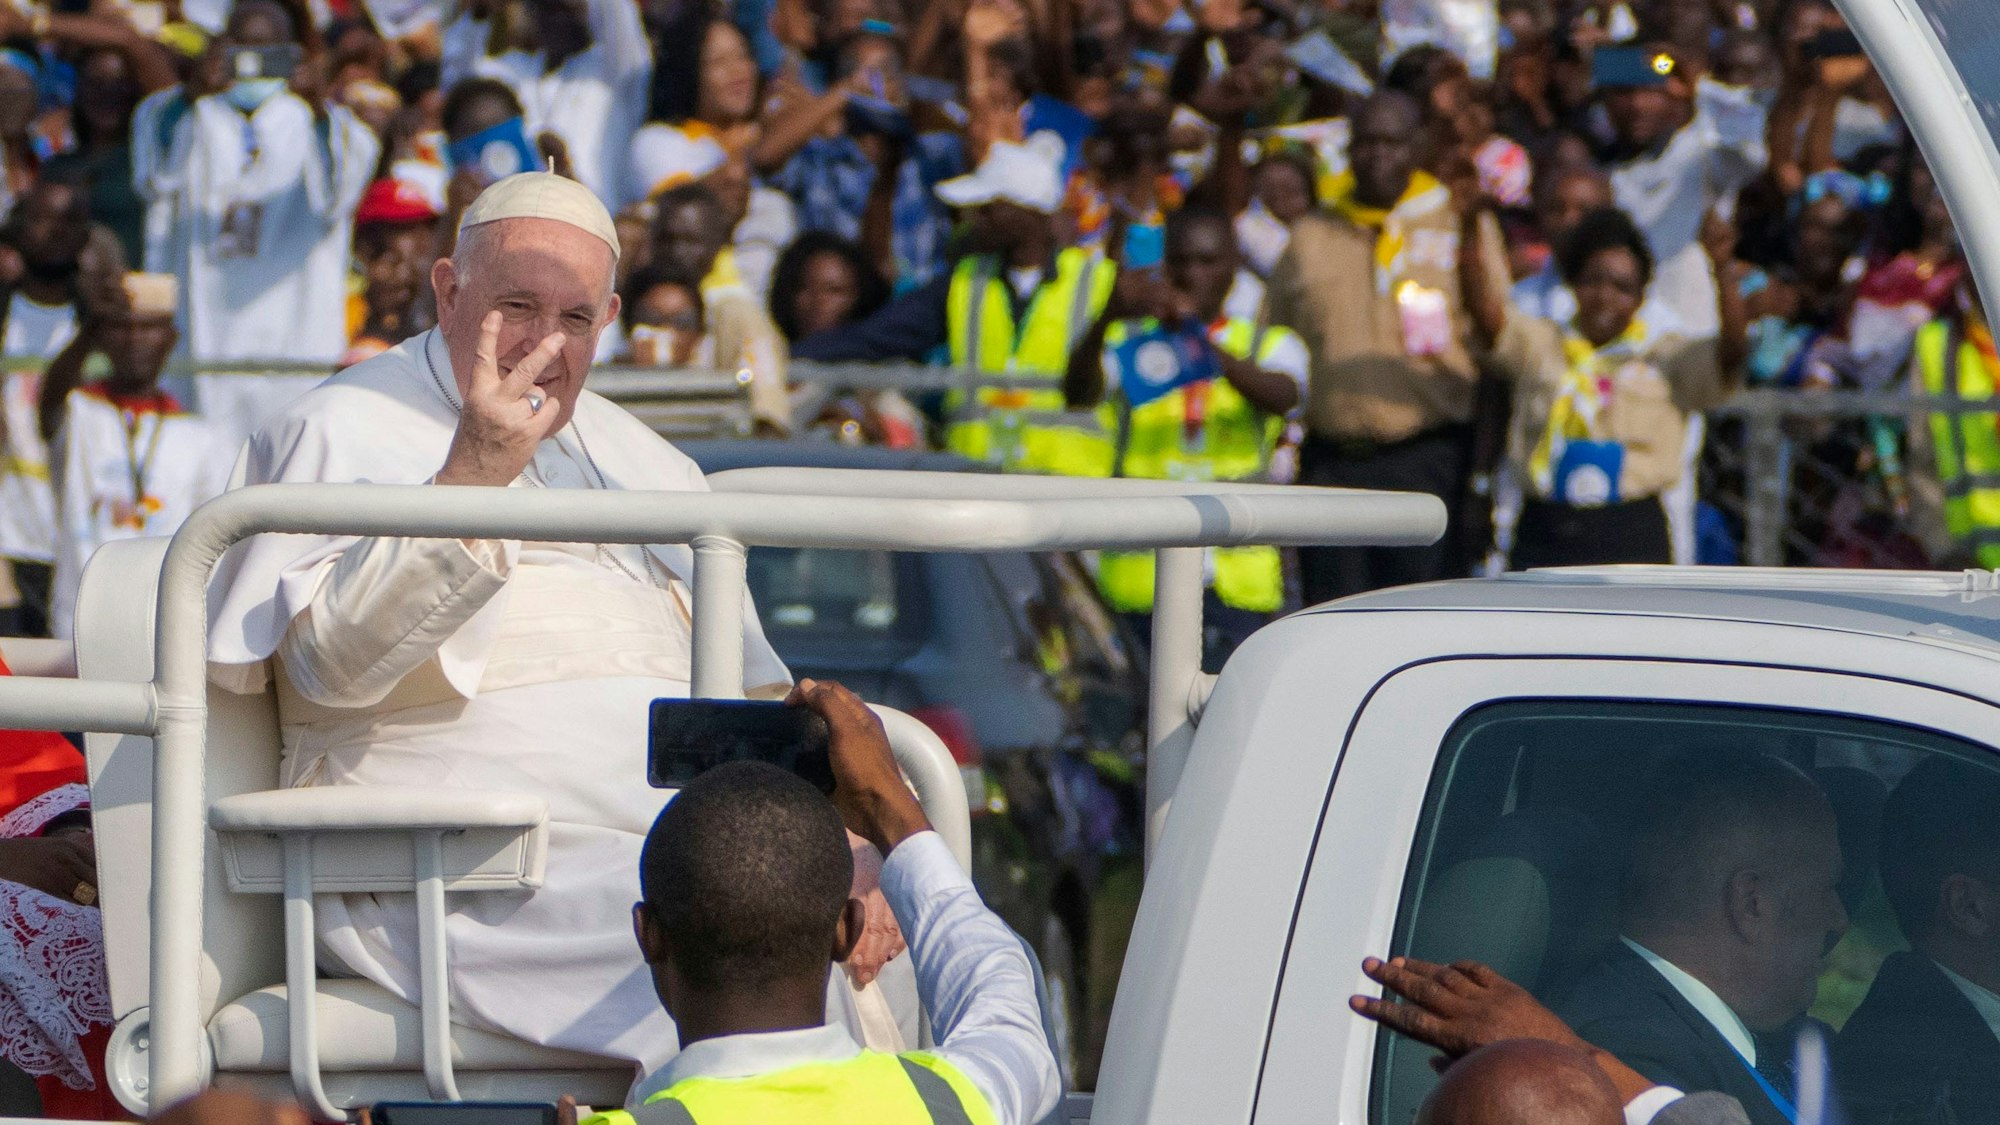 Papst Franziskus (M,l) sitzt bei seiner Ankunft auf dem Flughafen Ndolo in Kinshasa (Demokratische Republik Kongo) in einem offenen Fahrzeug und bildet mit den Fingern das V-Zeichen. Eine große Menge winkt ihm zu. Im Vordergrund fotografiert ein Mann in gelber Weste den Pontifex.